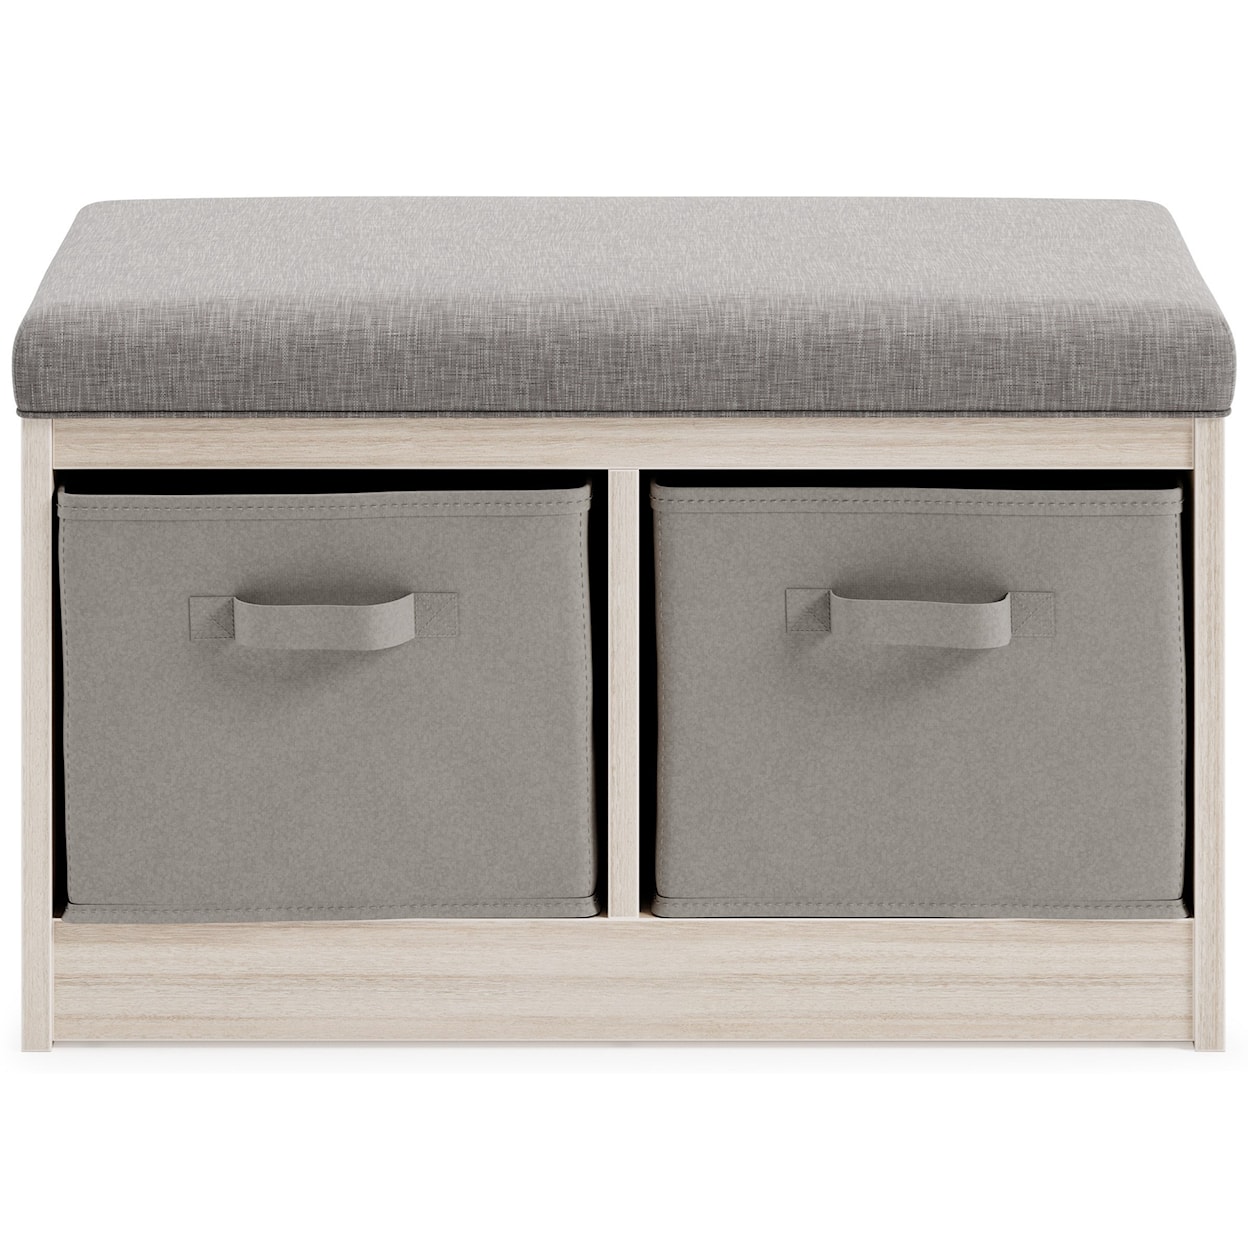 Signature Design by Ashley Furniture Blariden Storage Bench